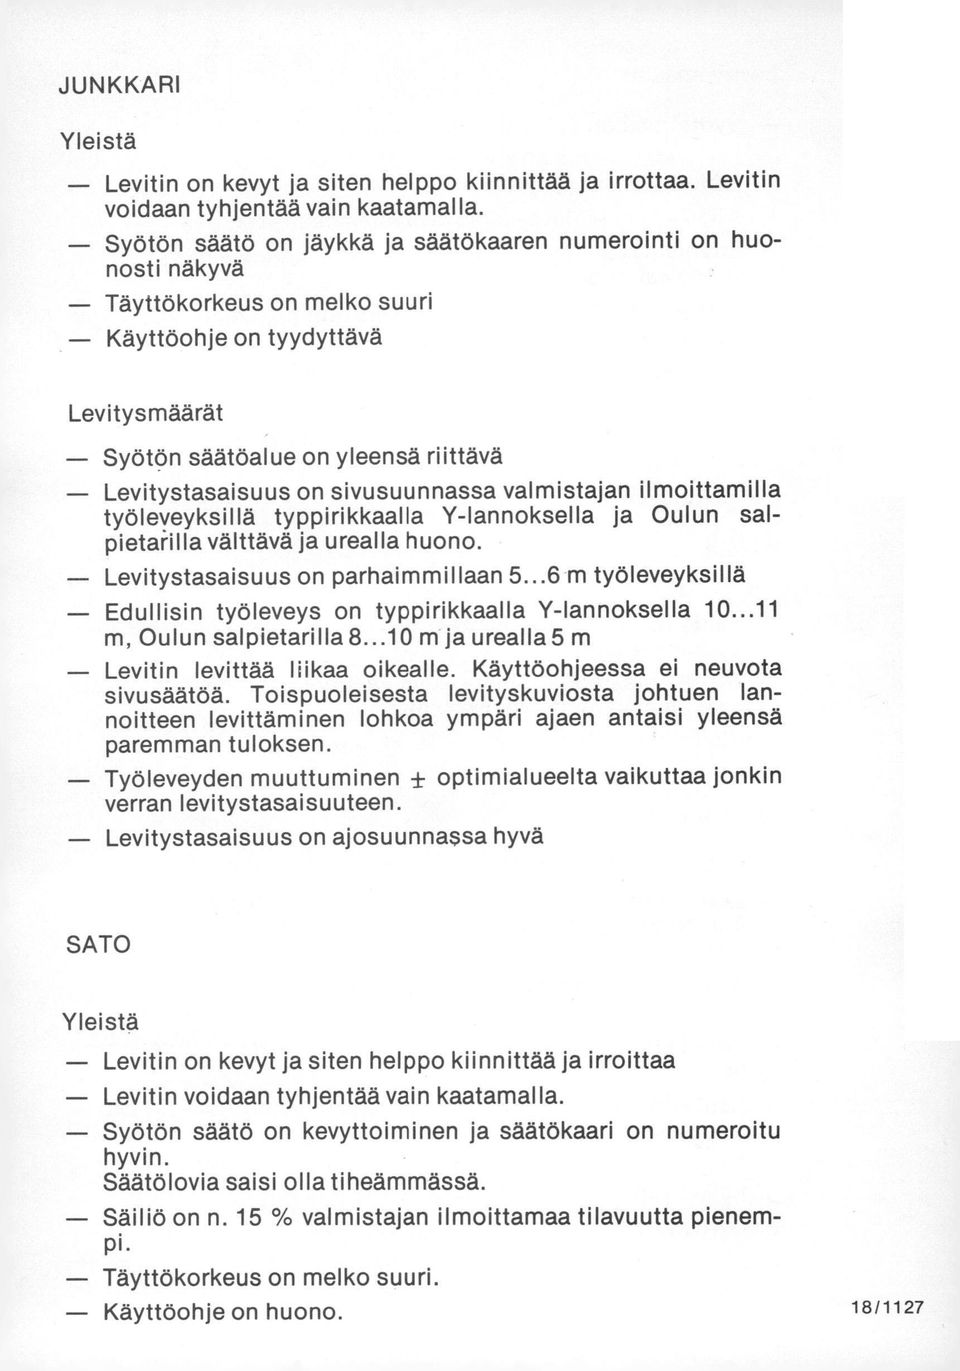 sivusuunnassa valmistajan ilmoittamilla työleveyksillä typpirikkaalla Y-lannoksella ja Oulun salpietahlla välttävä ja urealla huono. Levitystasaisuus on parhaimmillaan 5.